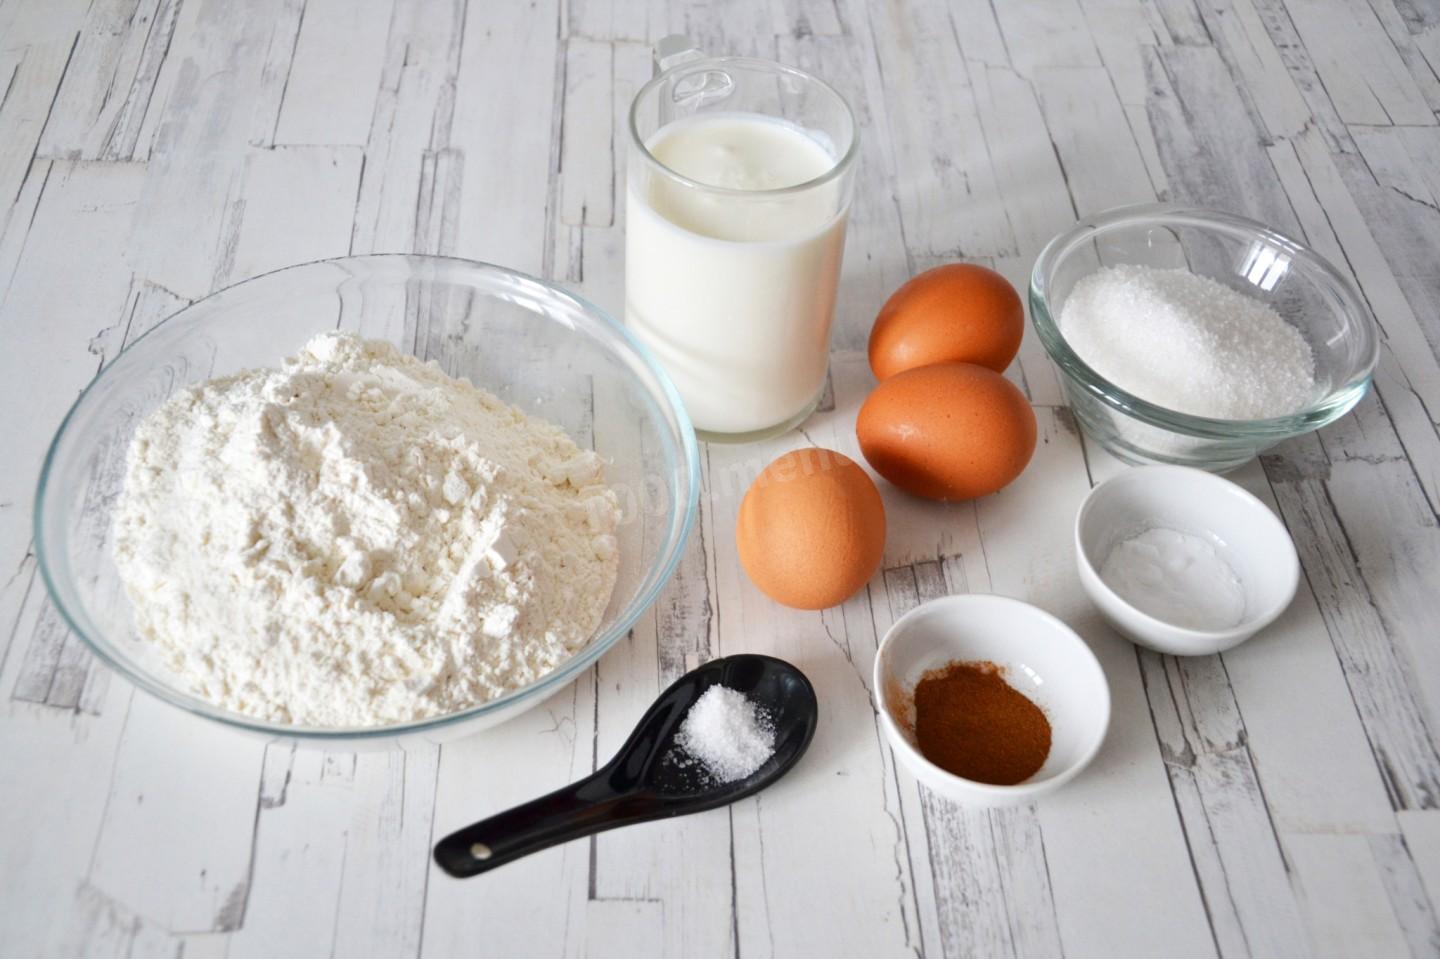 Кефир яйцо сахар мука сода. Ингредиенты для теста. Ингредиенты для блинов. Яйца молоко мука. Ингредиенты для блинного теста.